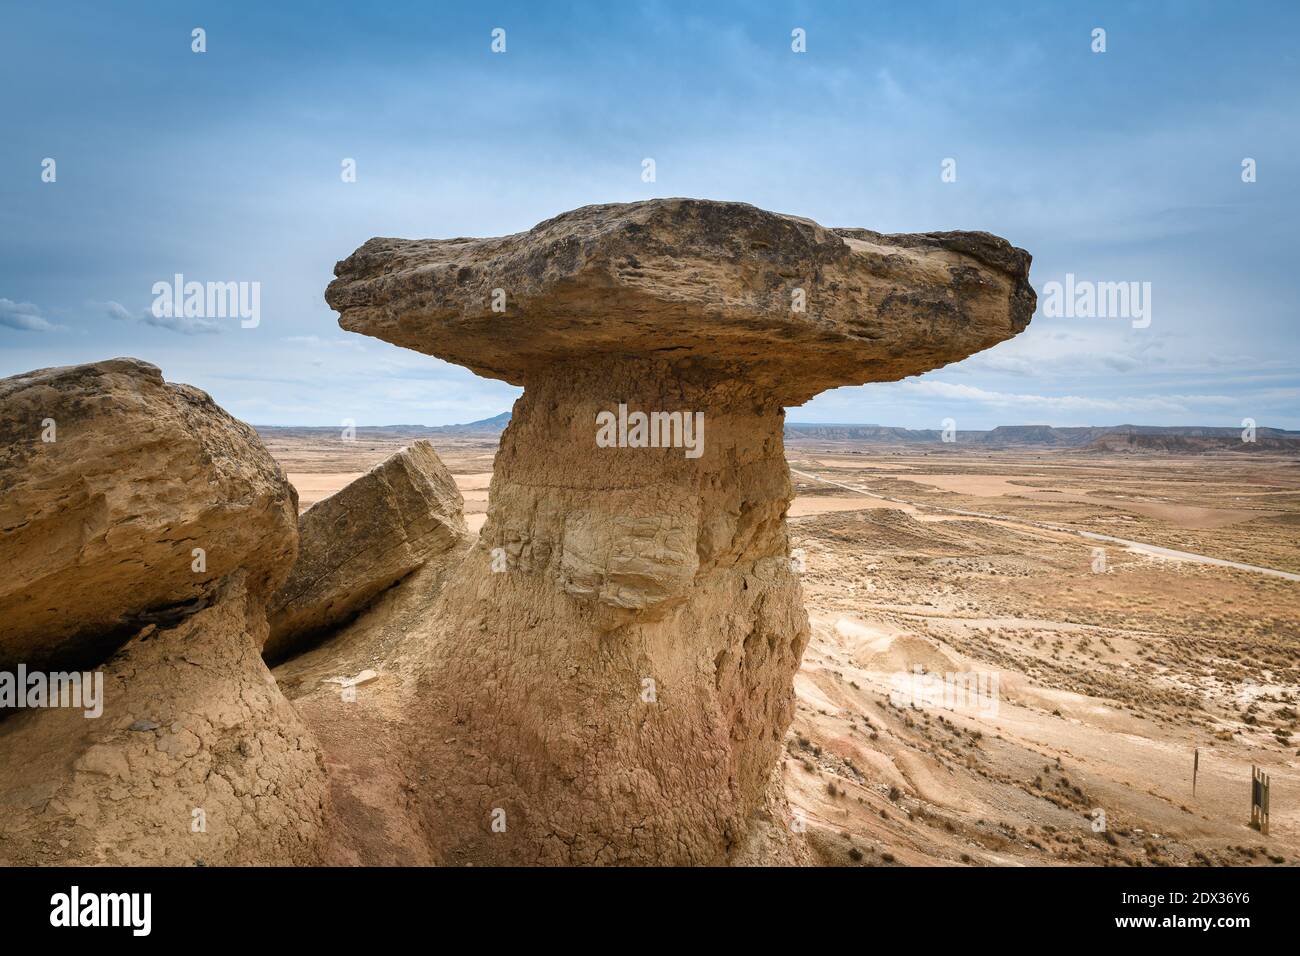 Mushroom rock at Bardenas Reales, Navarre, Spain Stock Photo